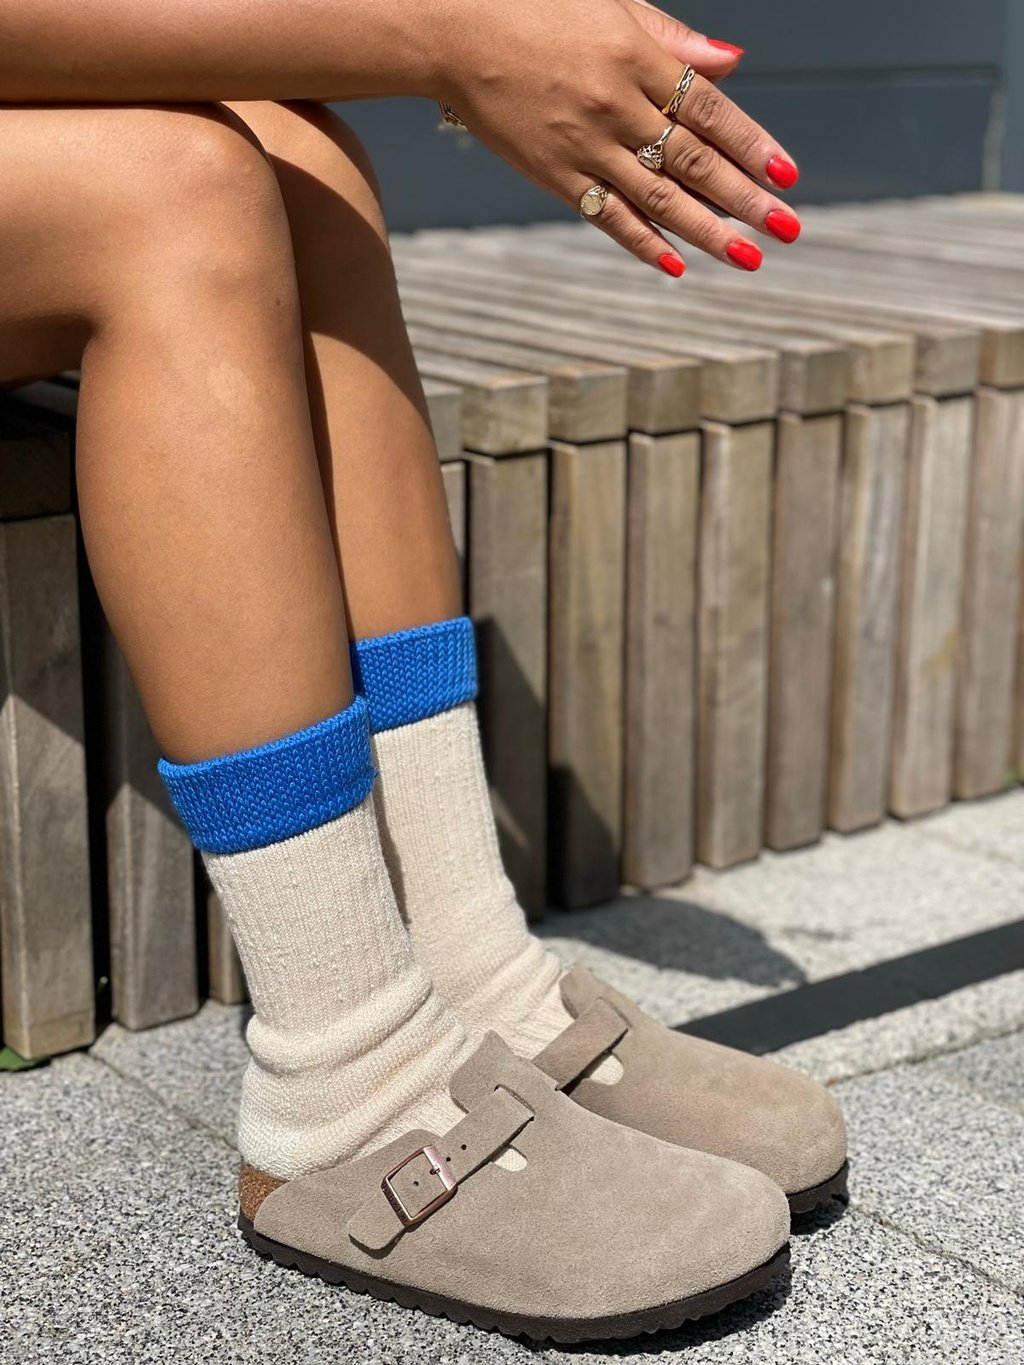 The Meyer | Women's Quarter Length Socks by Ivy Ellis Socks 